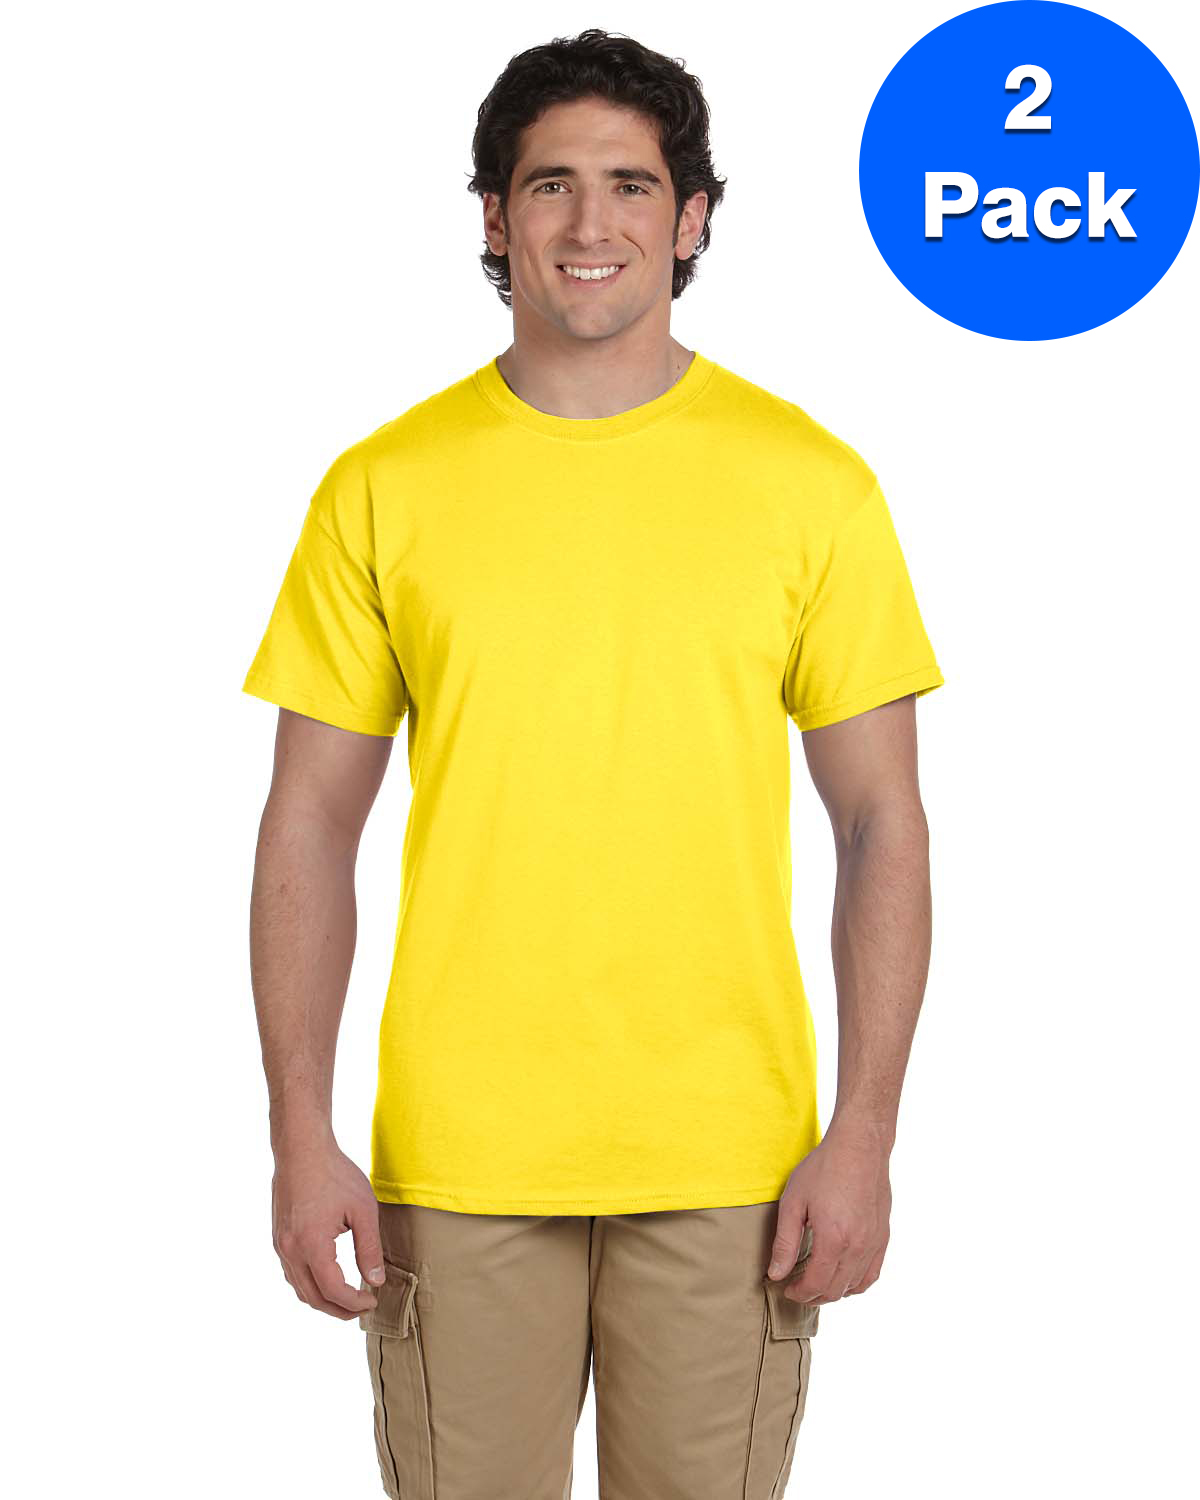 Mens 5.2 oz., 50/50 ComfortBlend EcoSmart T-Shirt 5170 (2 PACK) - image 1 of 3